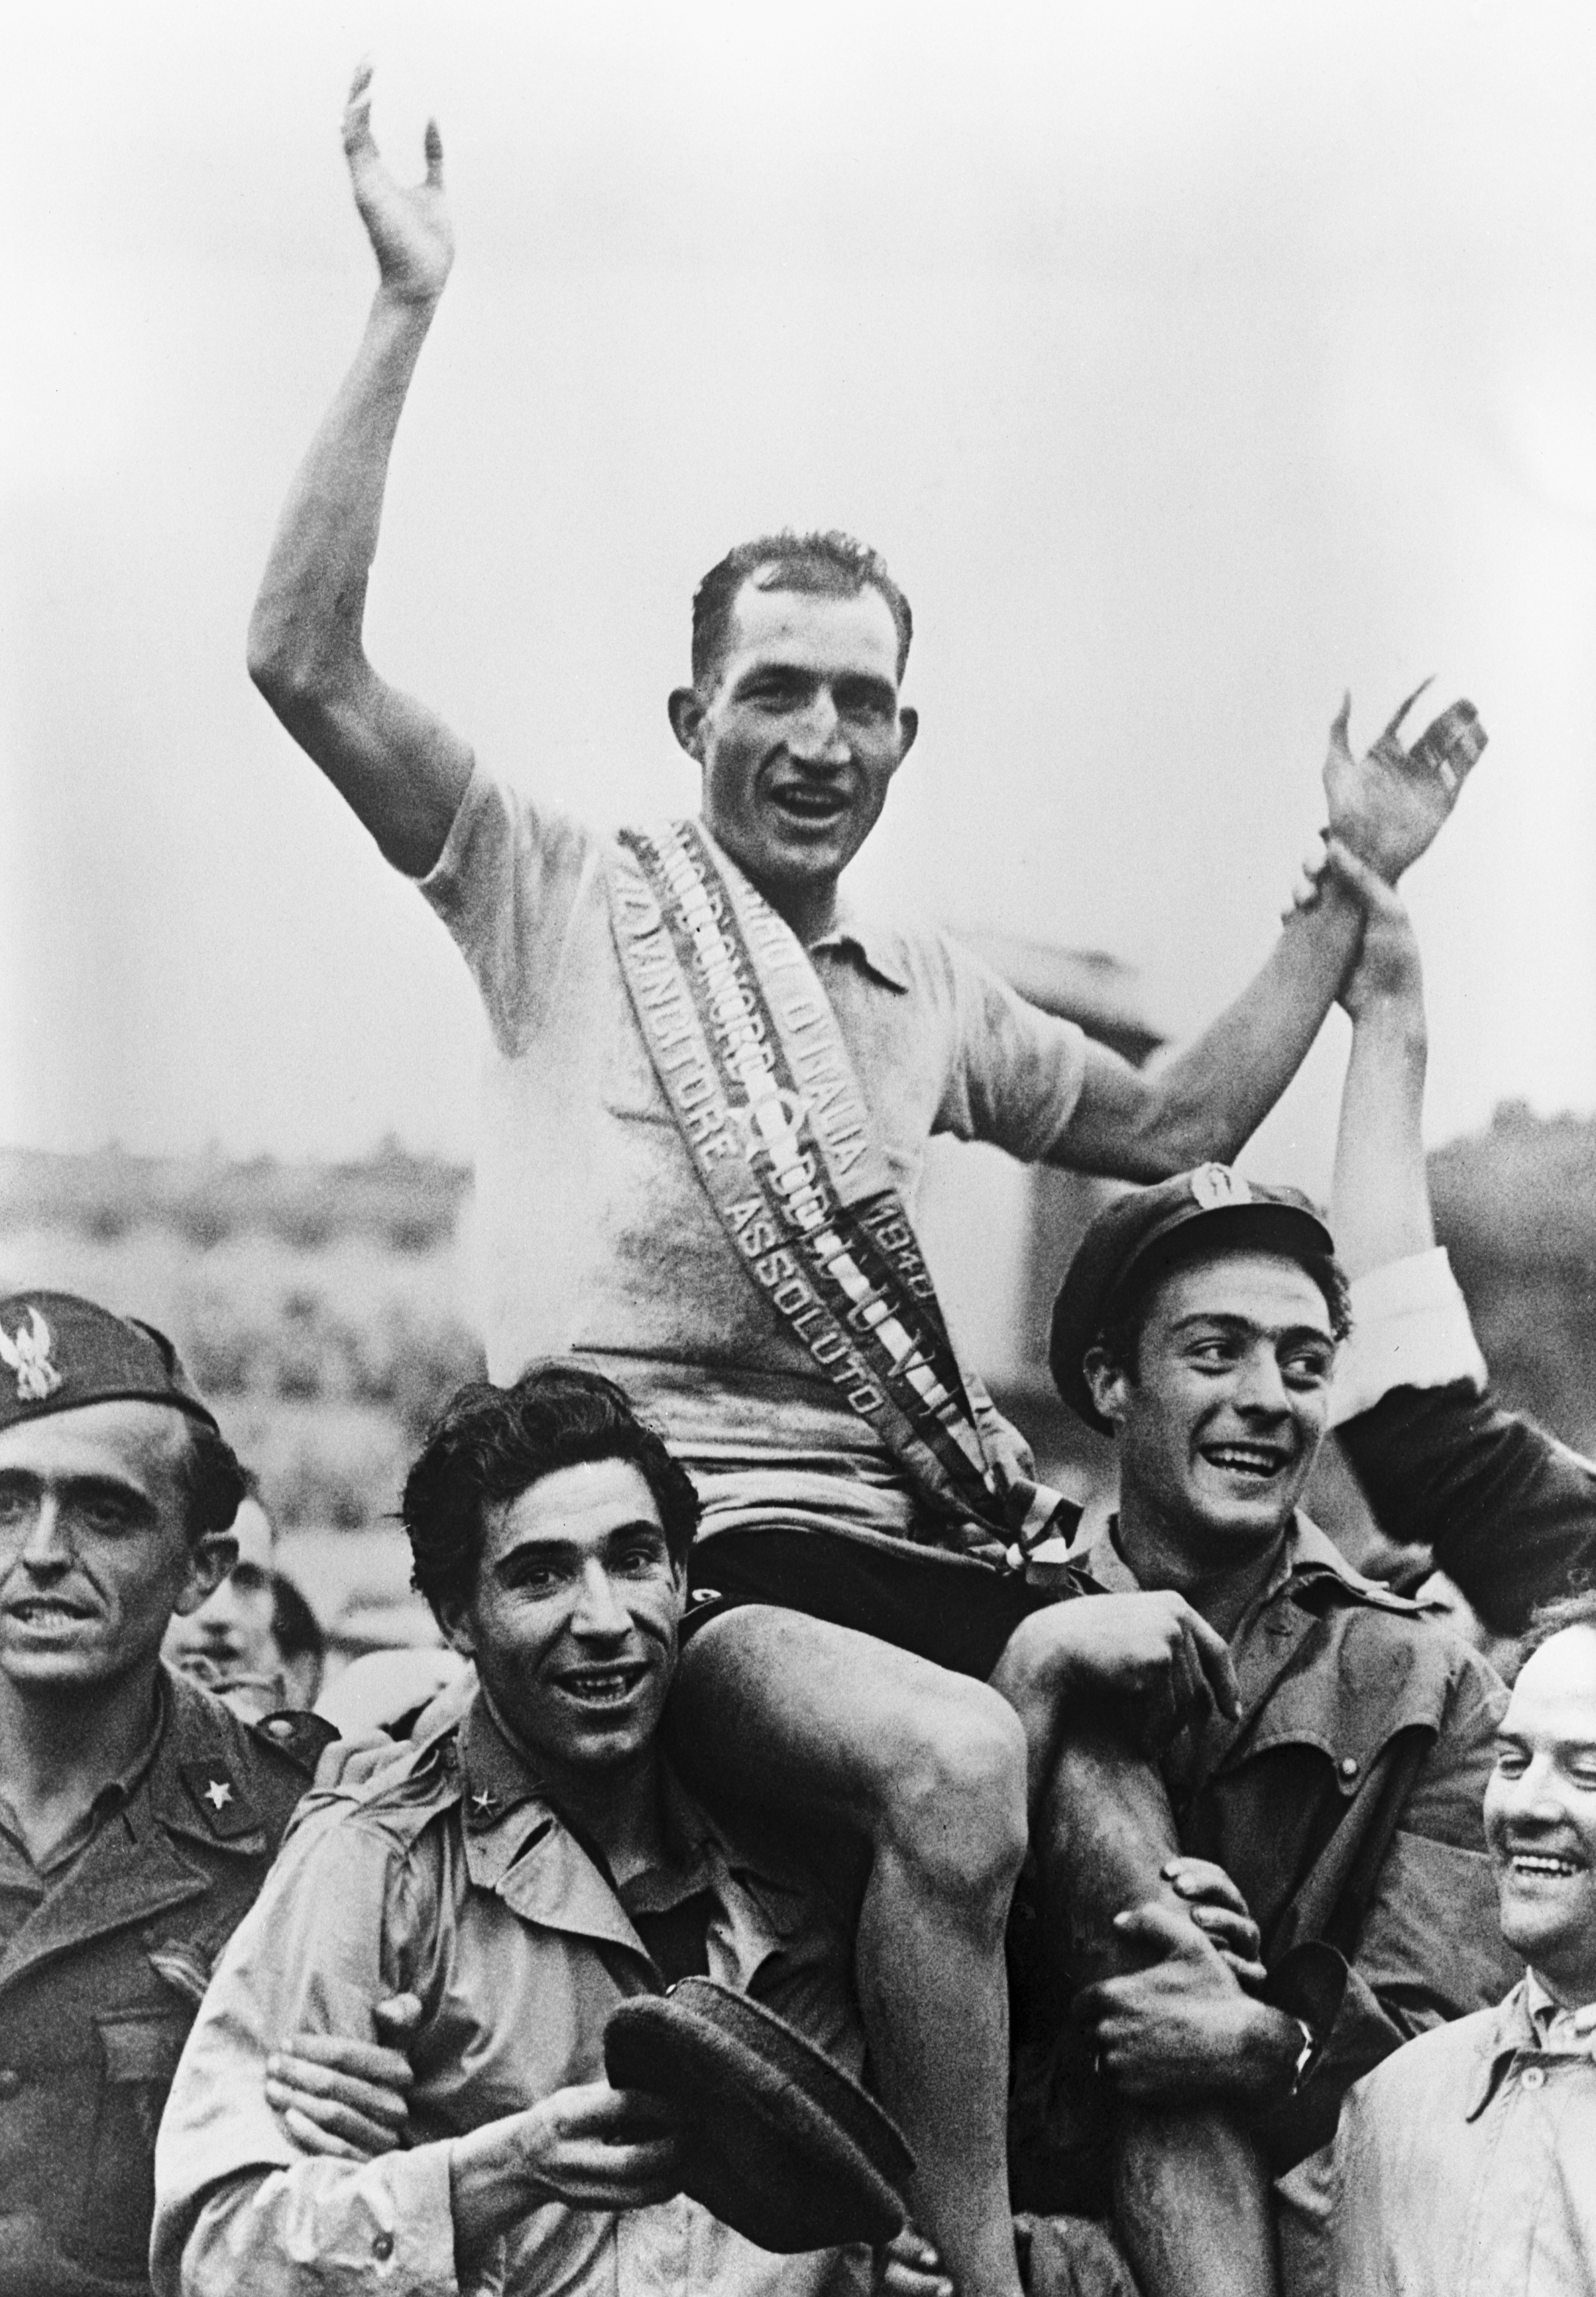 Bartali despus de haber ganado el Giro de Italia